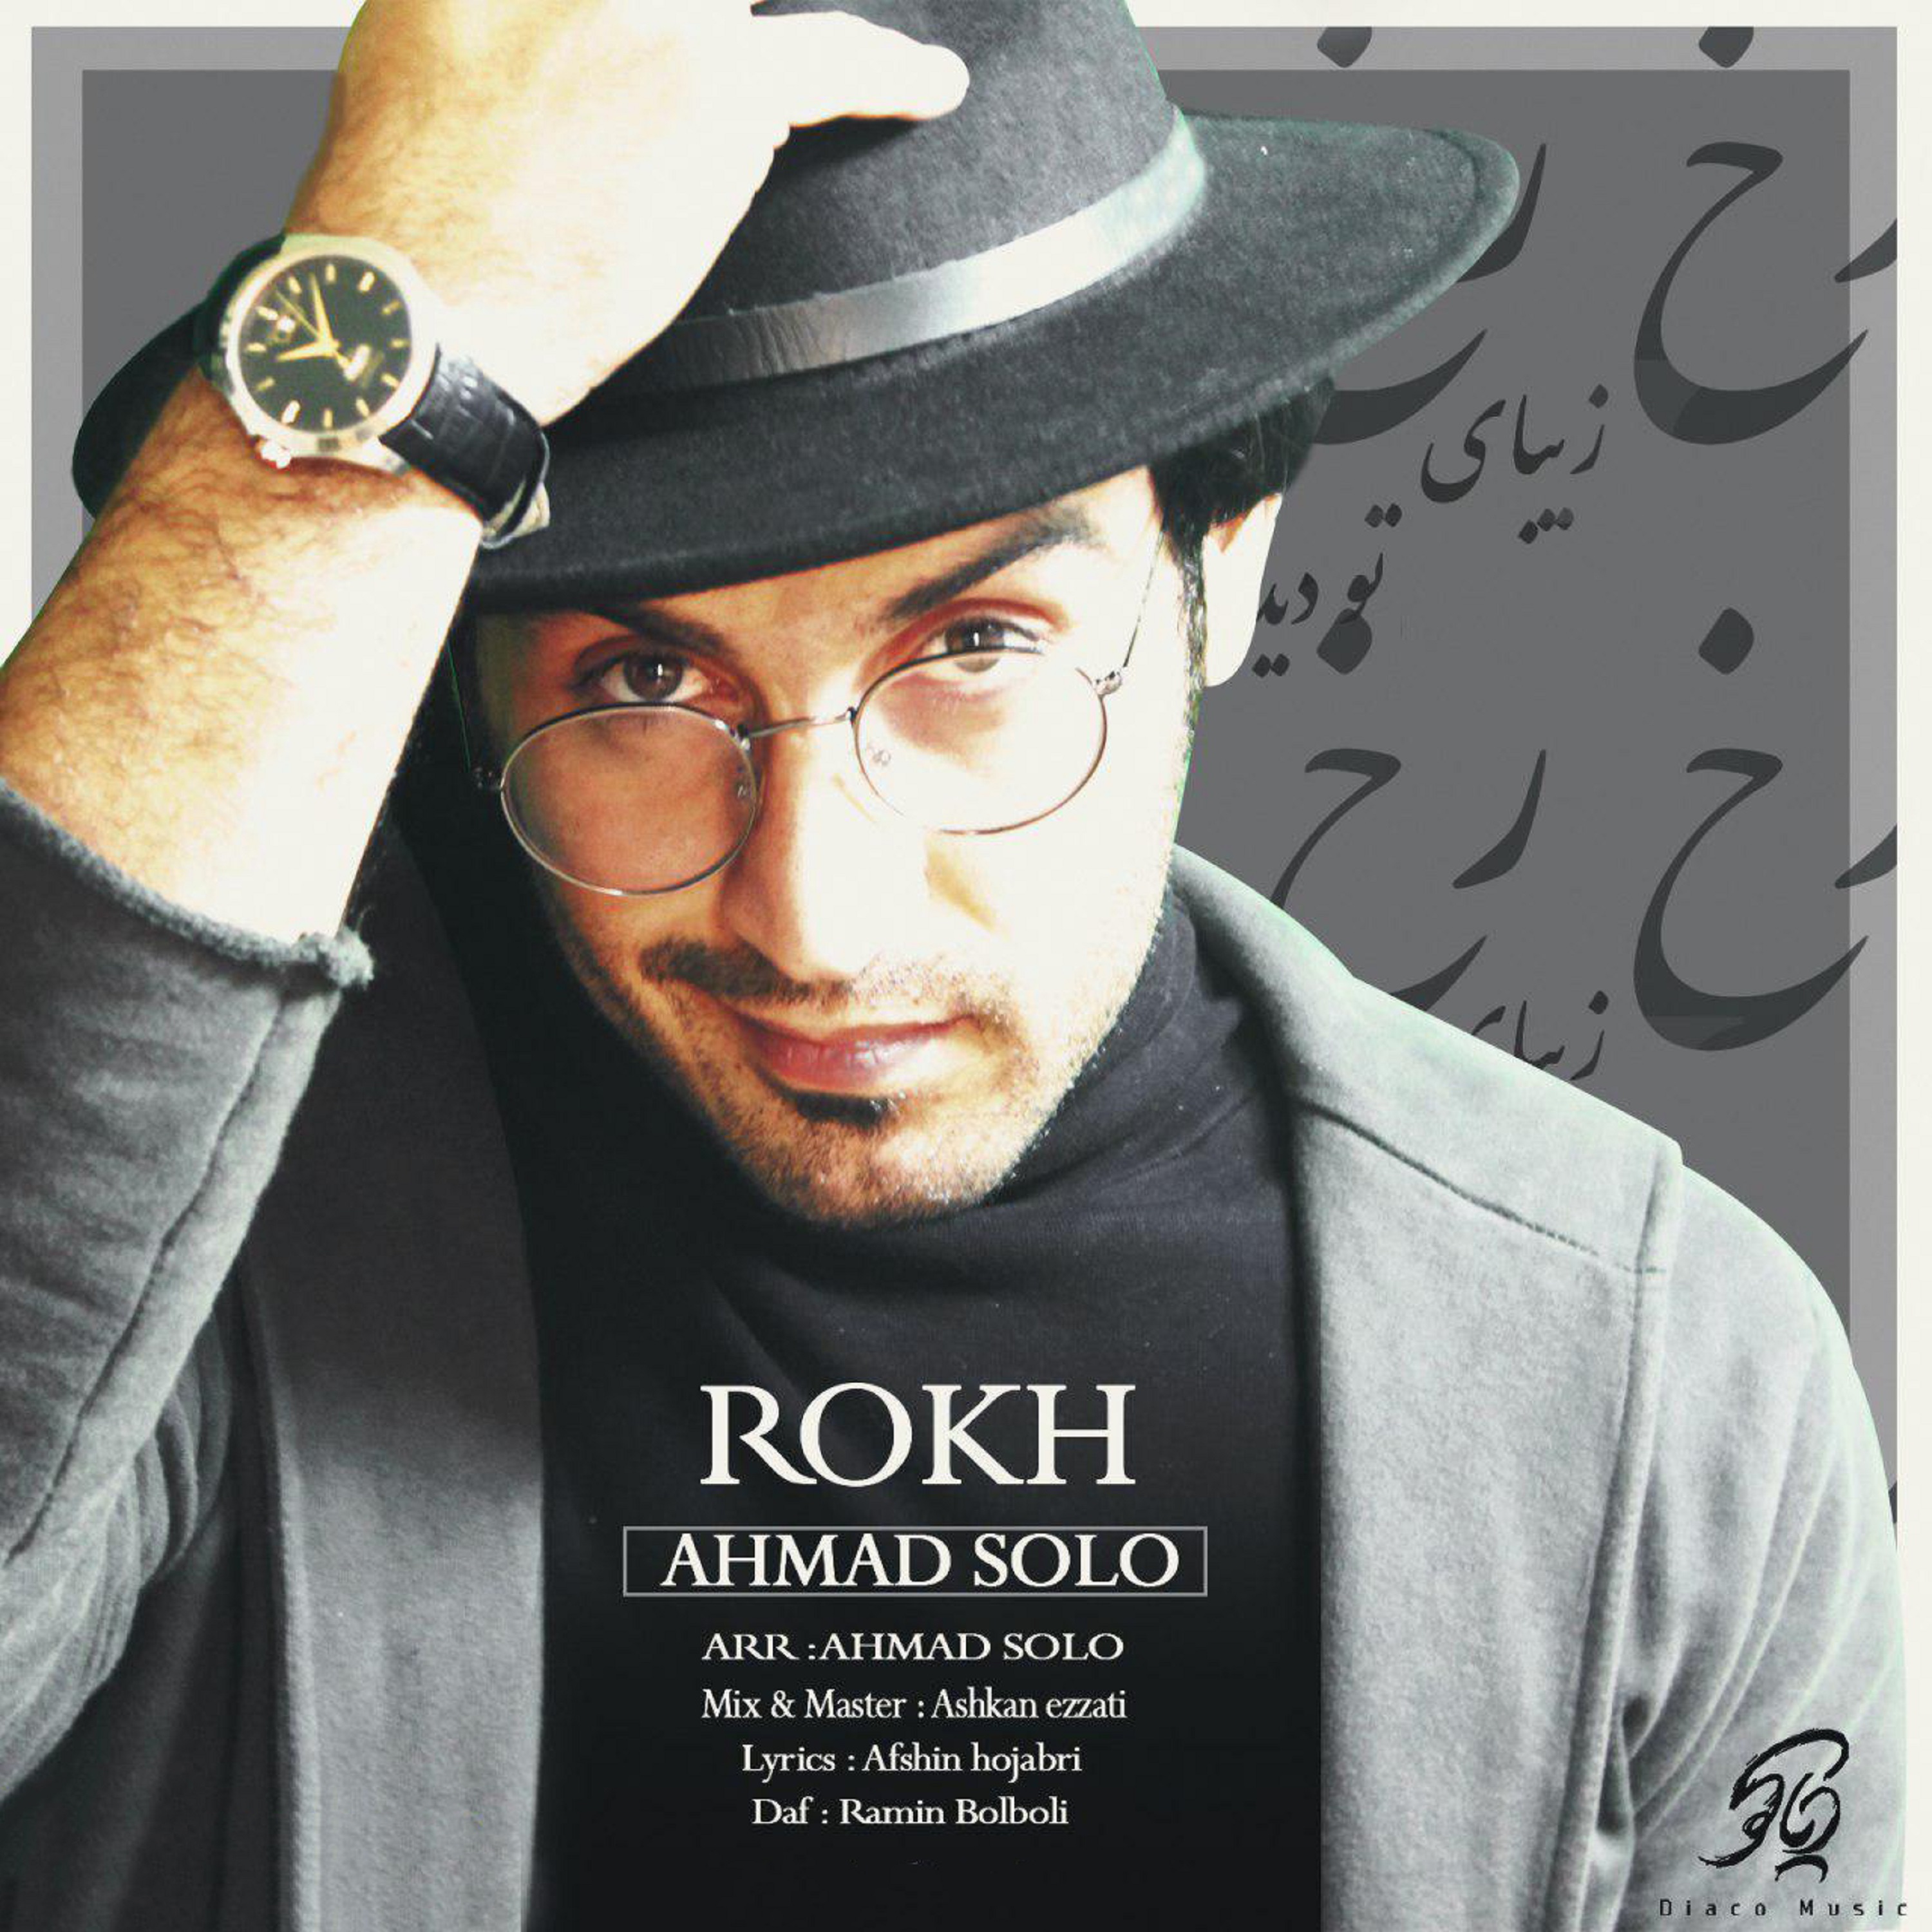  دانلود آهنگ جدید احمد سلو - رخ | Download New Music By Ahmad Solo - Rokh